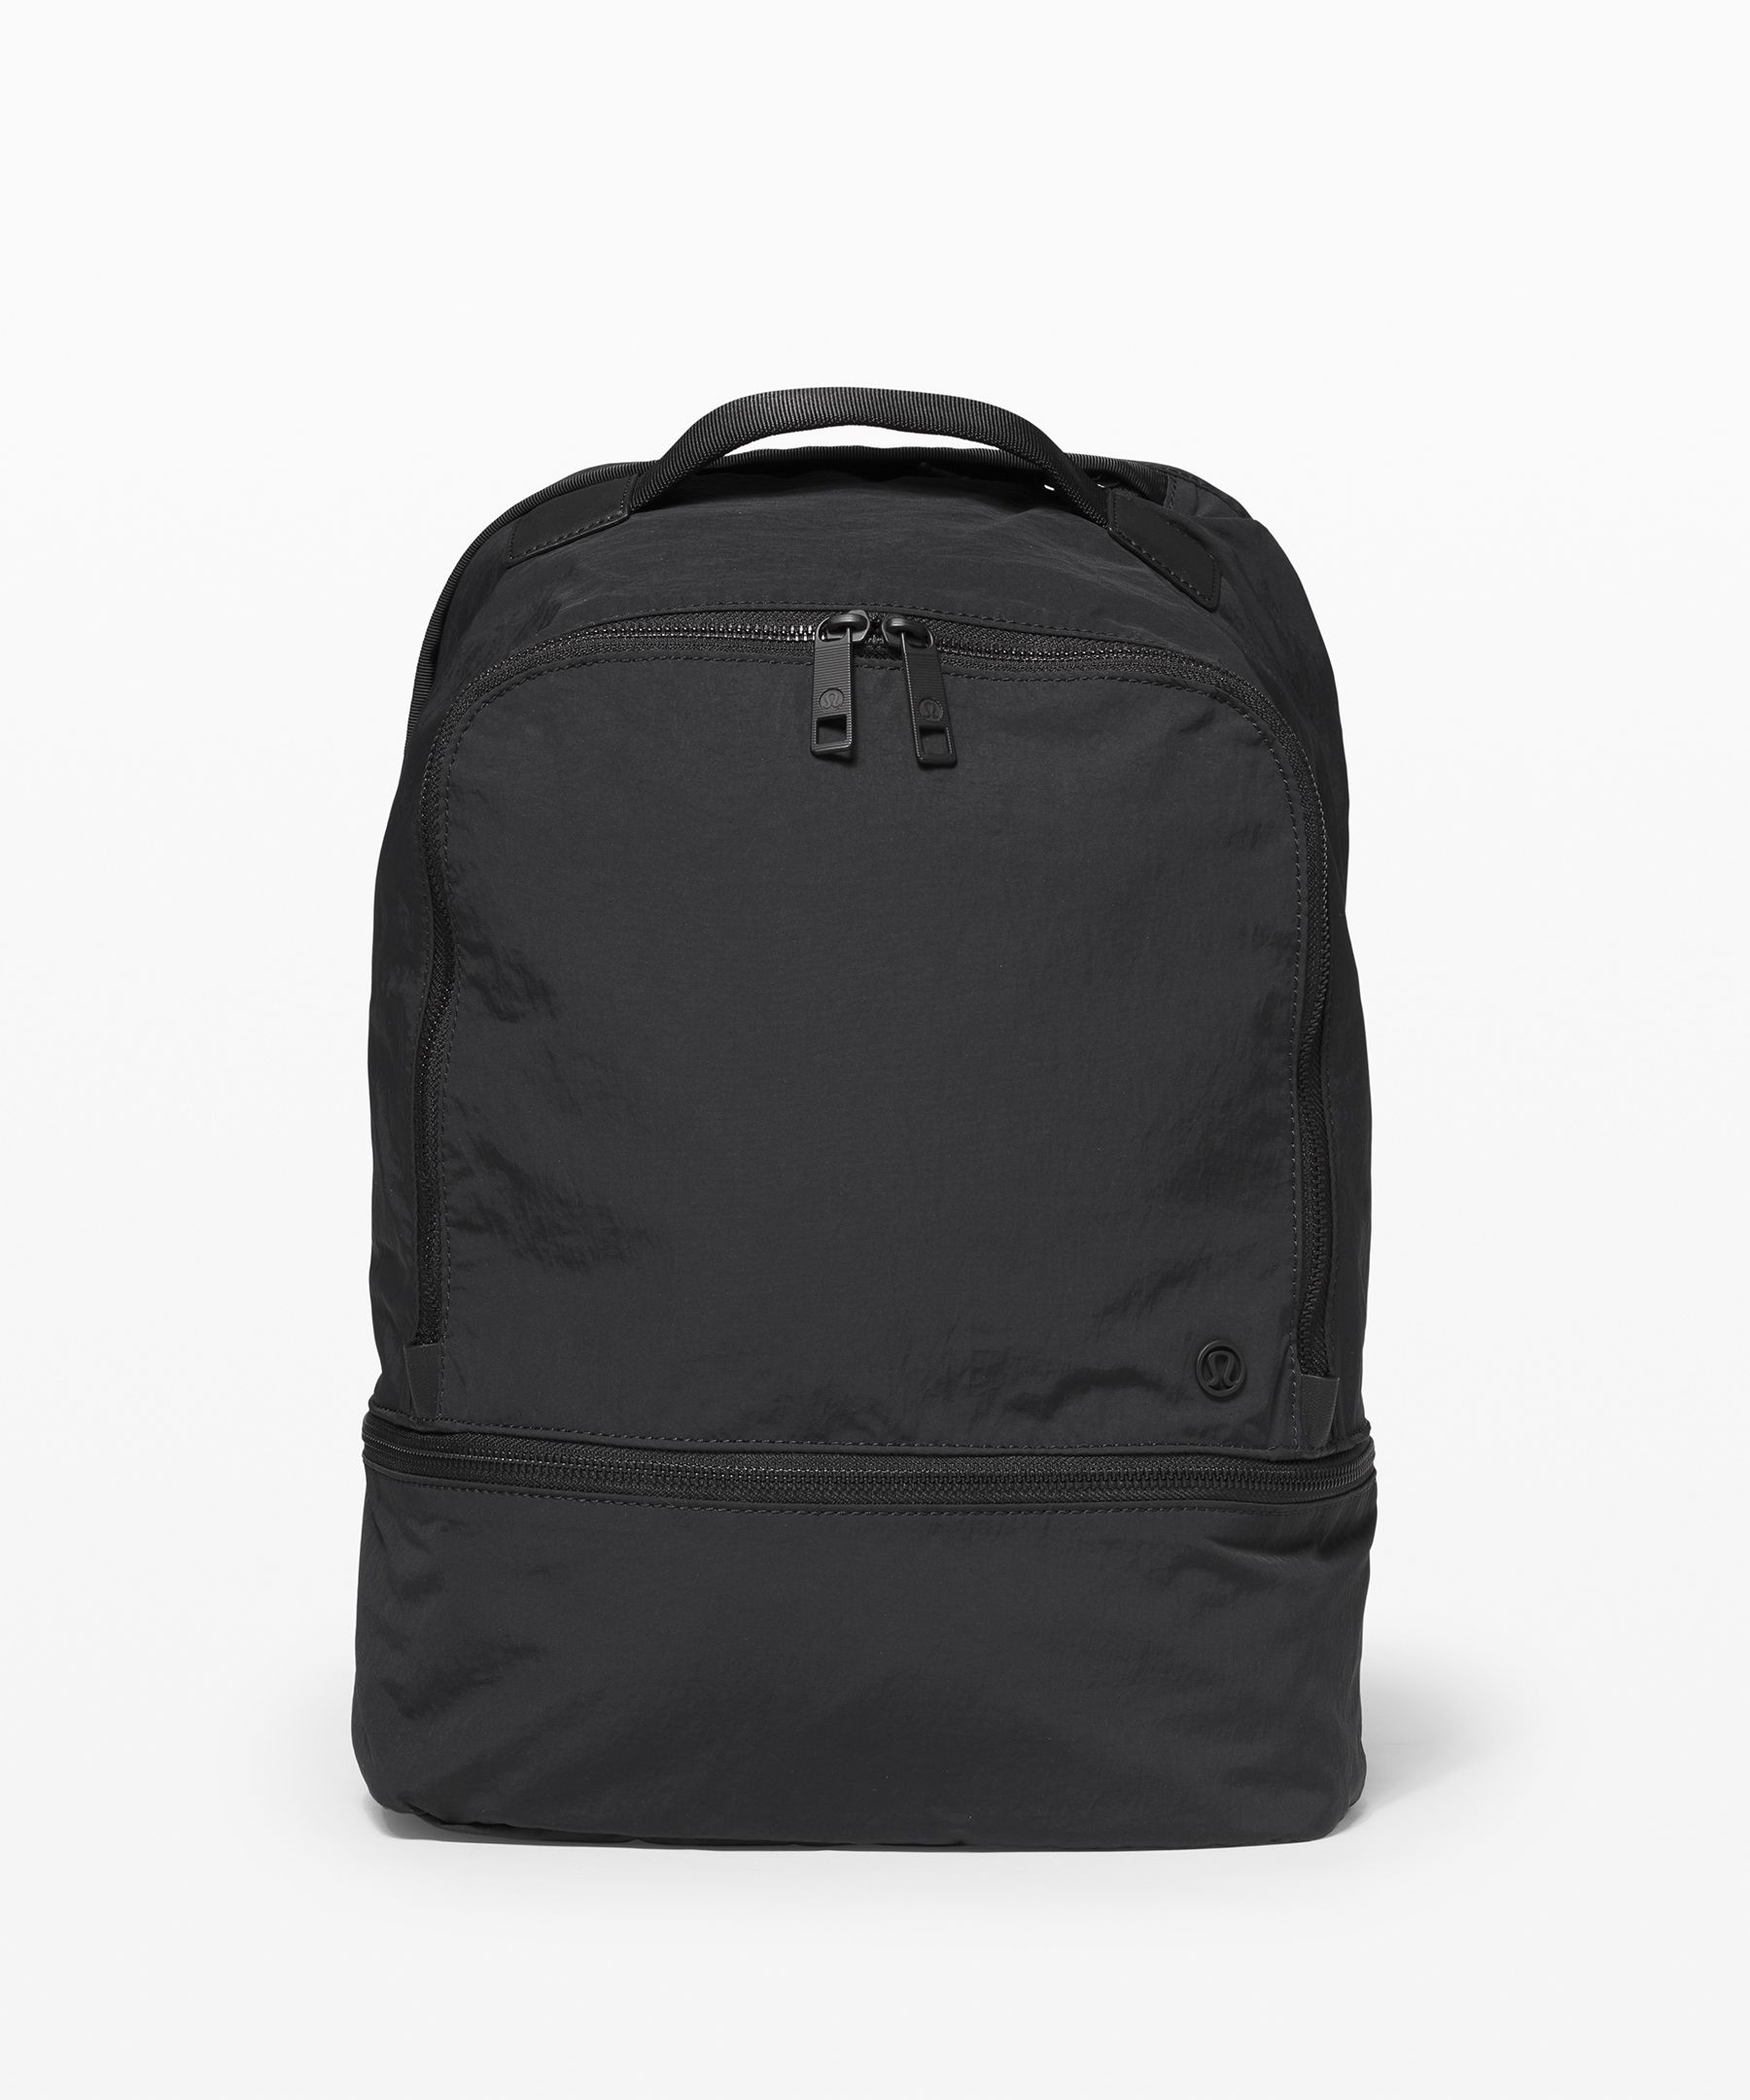 Lululemon City Adventurer Backpack 17l In Black